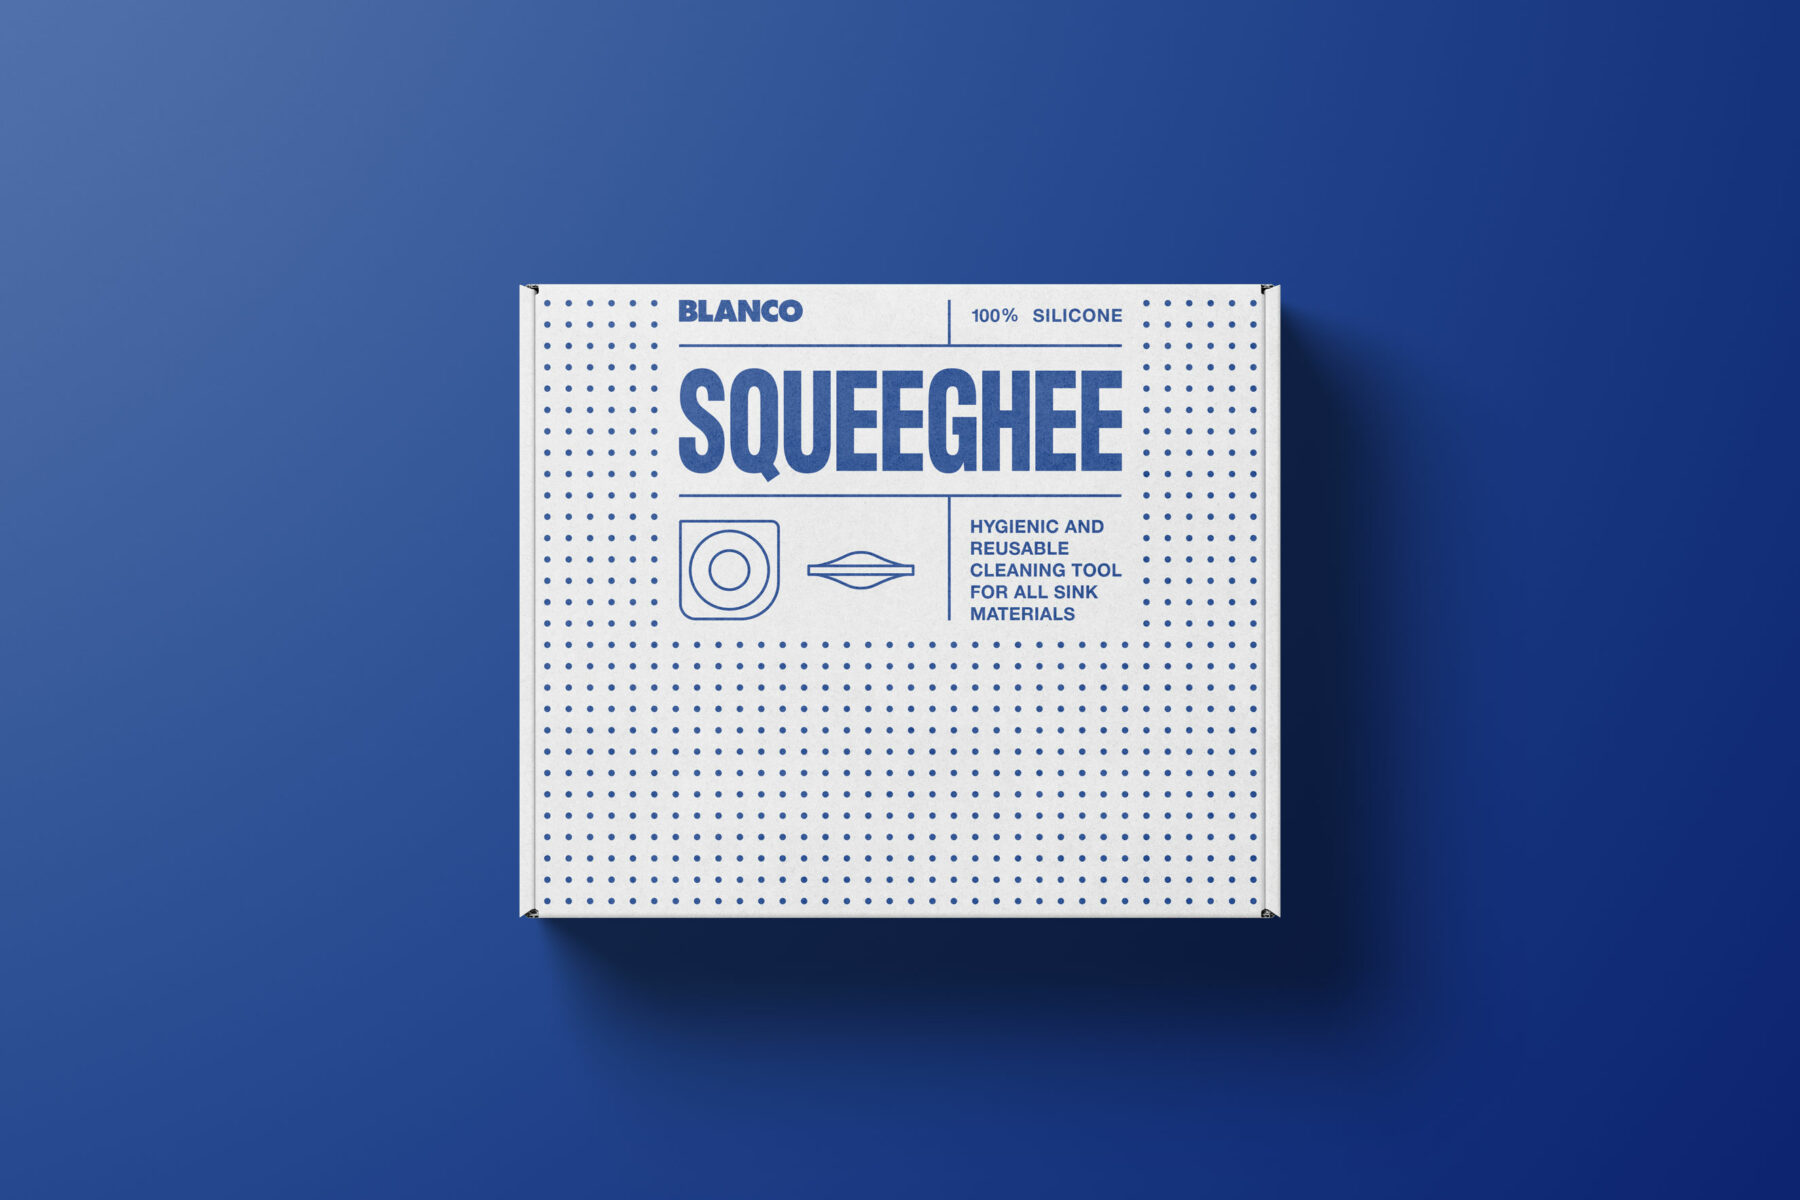 Blanco Squeeghee – Verpackung ()